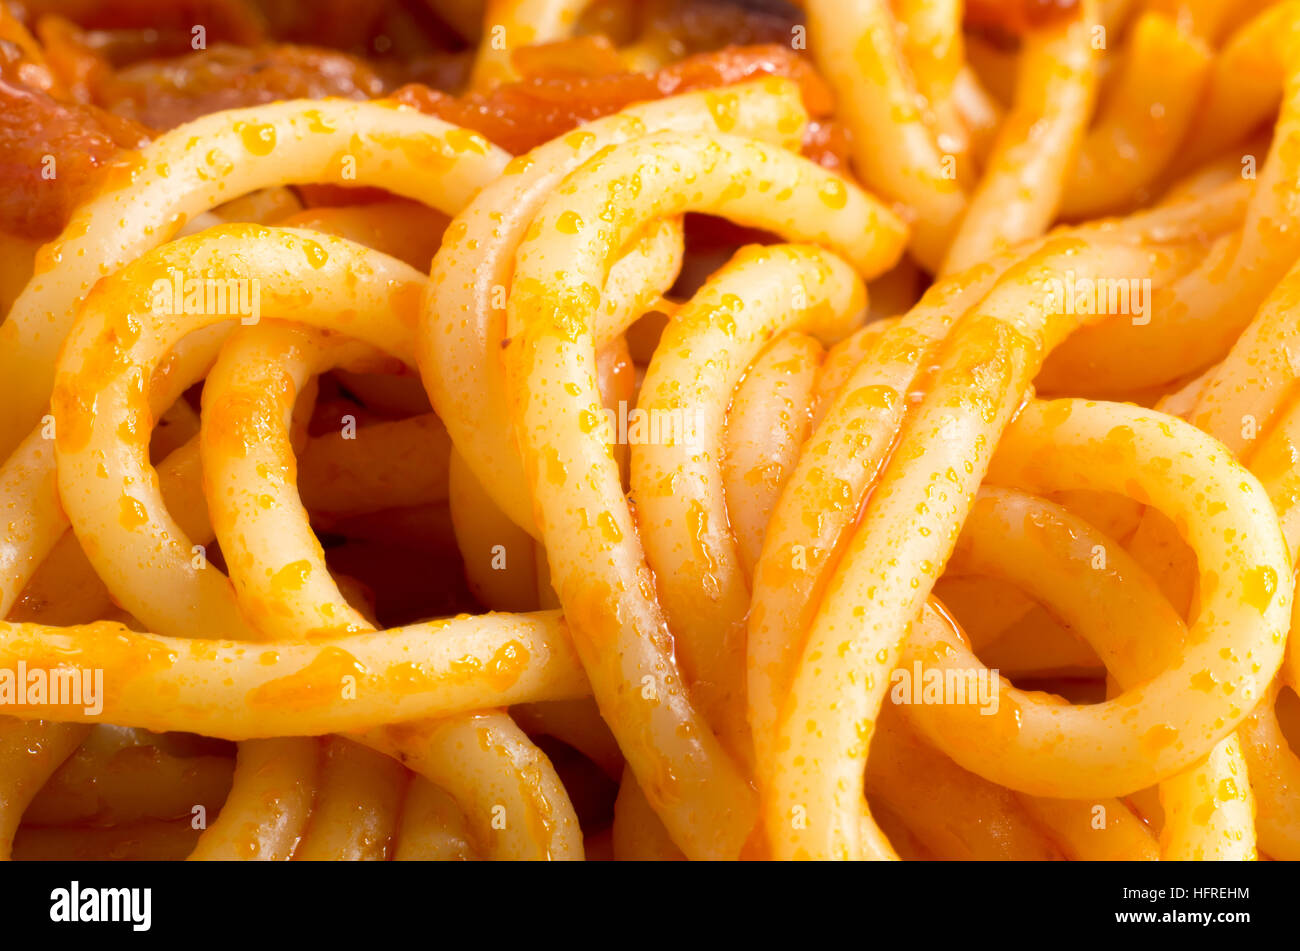 Vue macro détaillée sur le spaghetti cuit avec des oignons et des légumes close-up avec une faible profondeur de foyer Banque D'Images